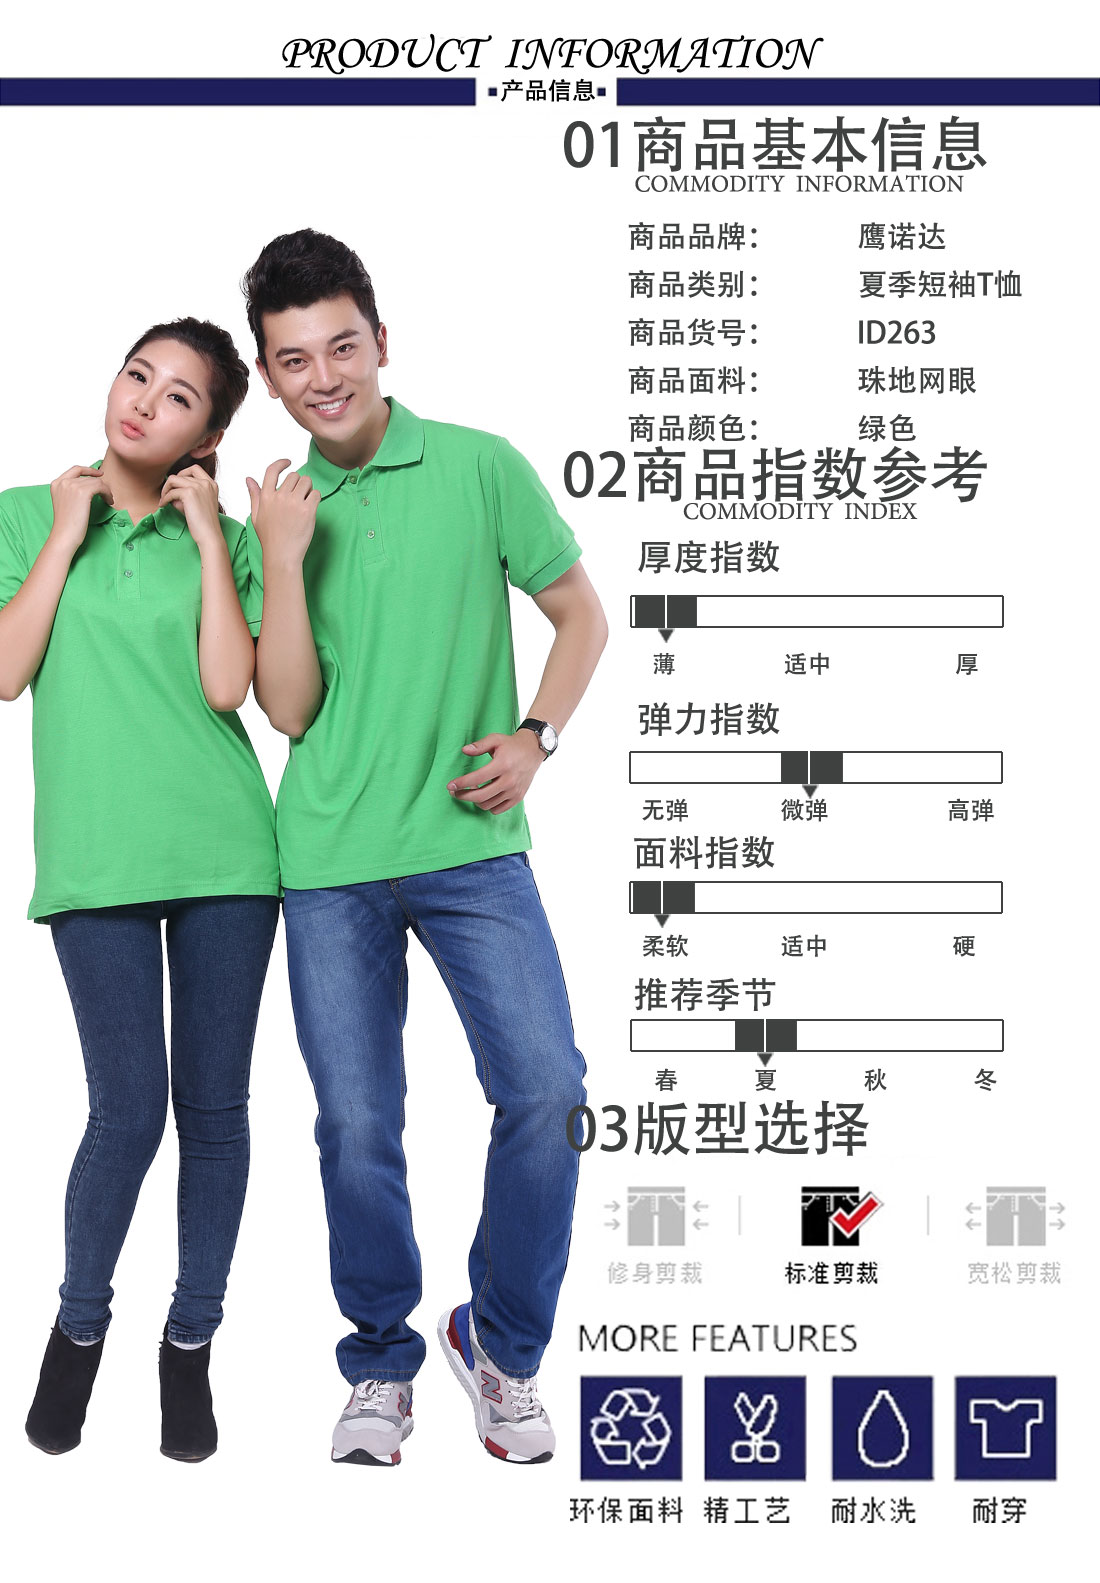 夏季绿色短袖T恤工作服 纯棉潮可绣字t恤衫工作服商品基本信息、指数参考、版型选择